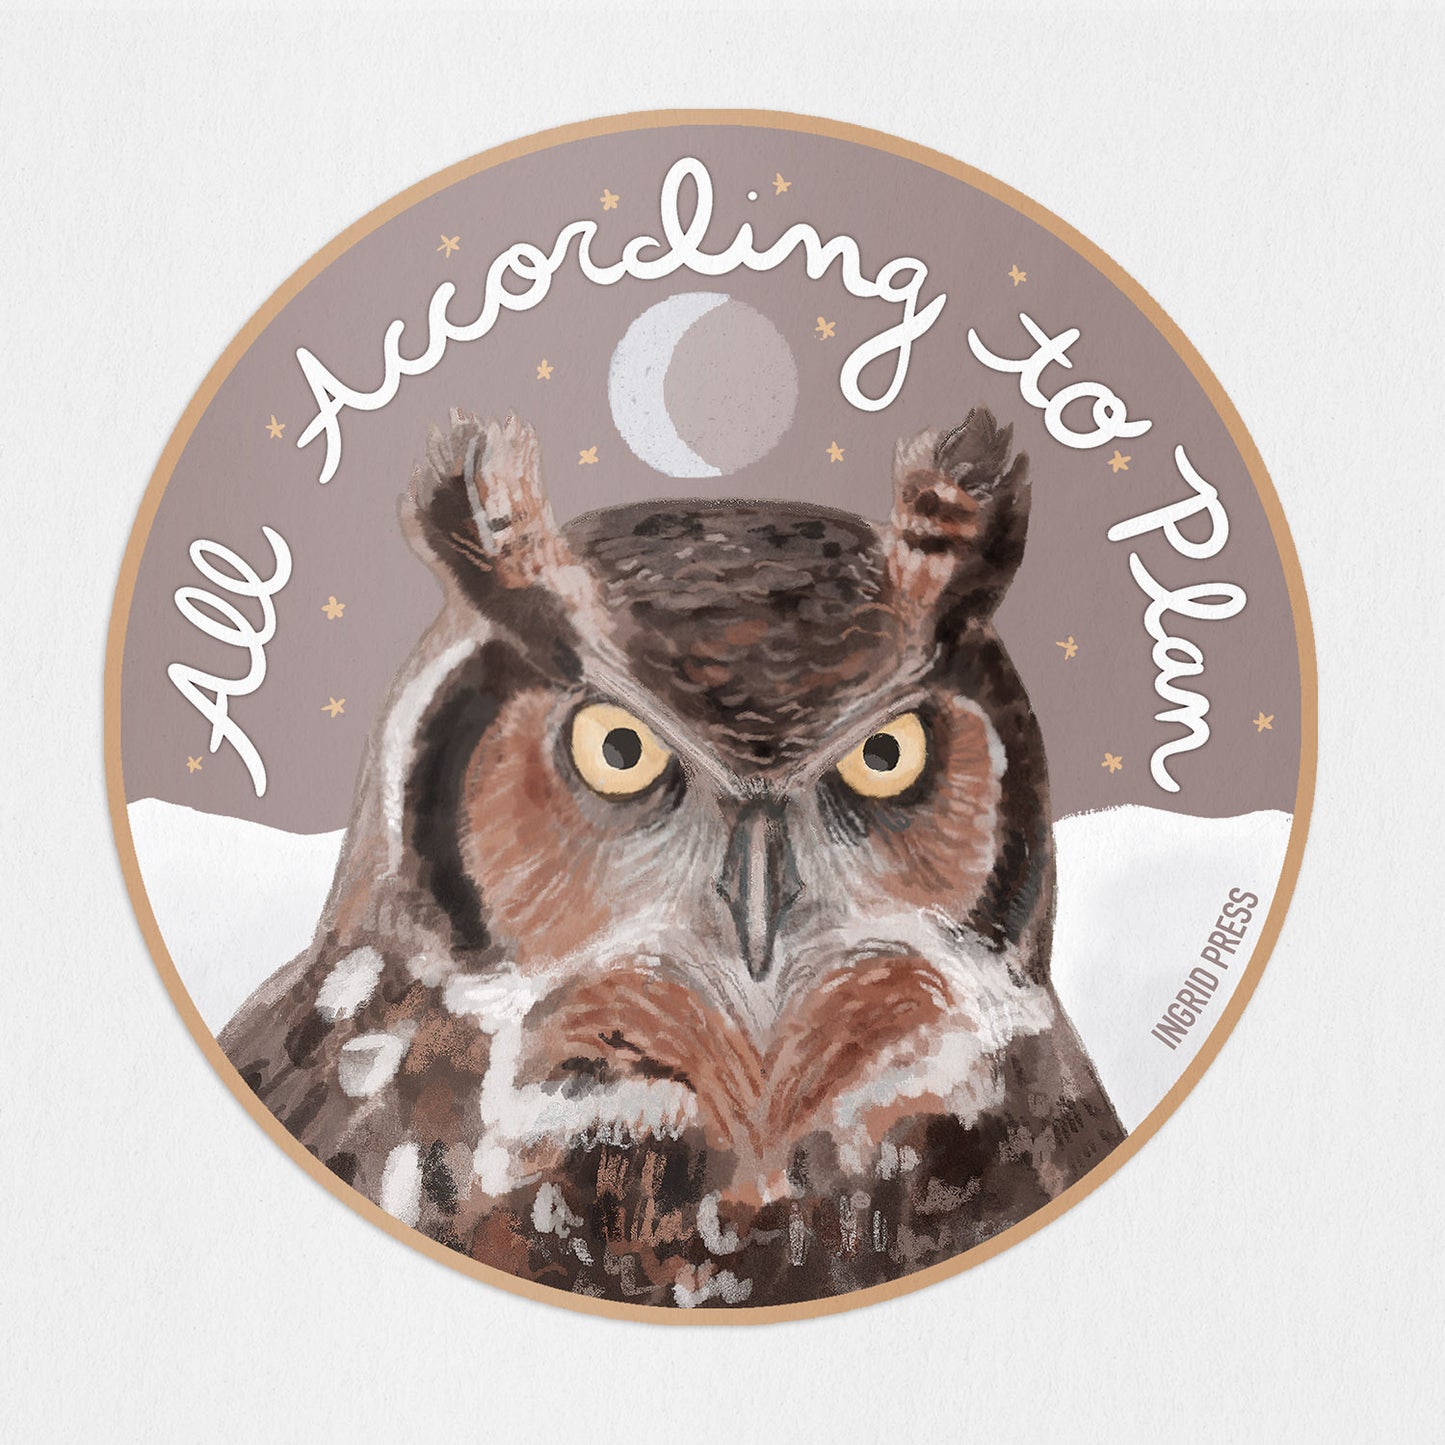 According to Plan Owl Die-Cut Sticker